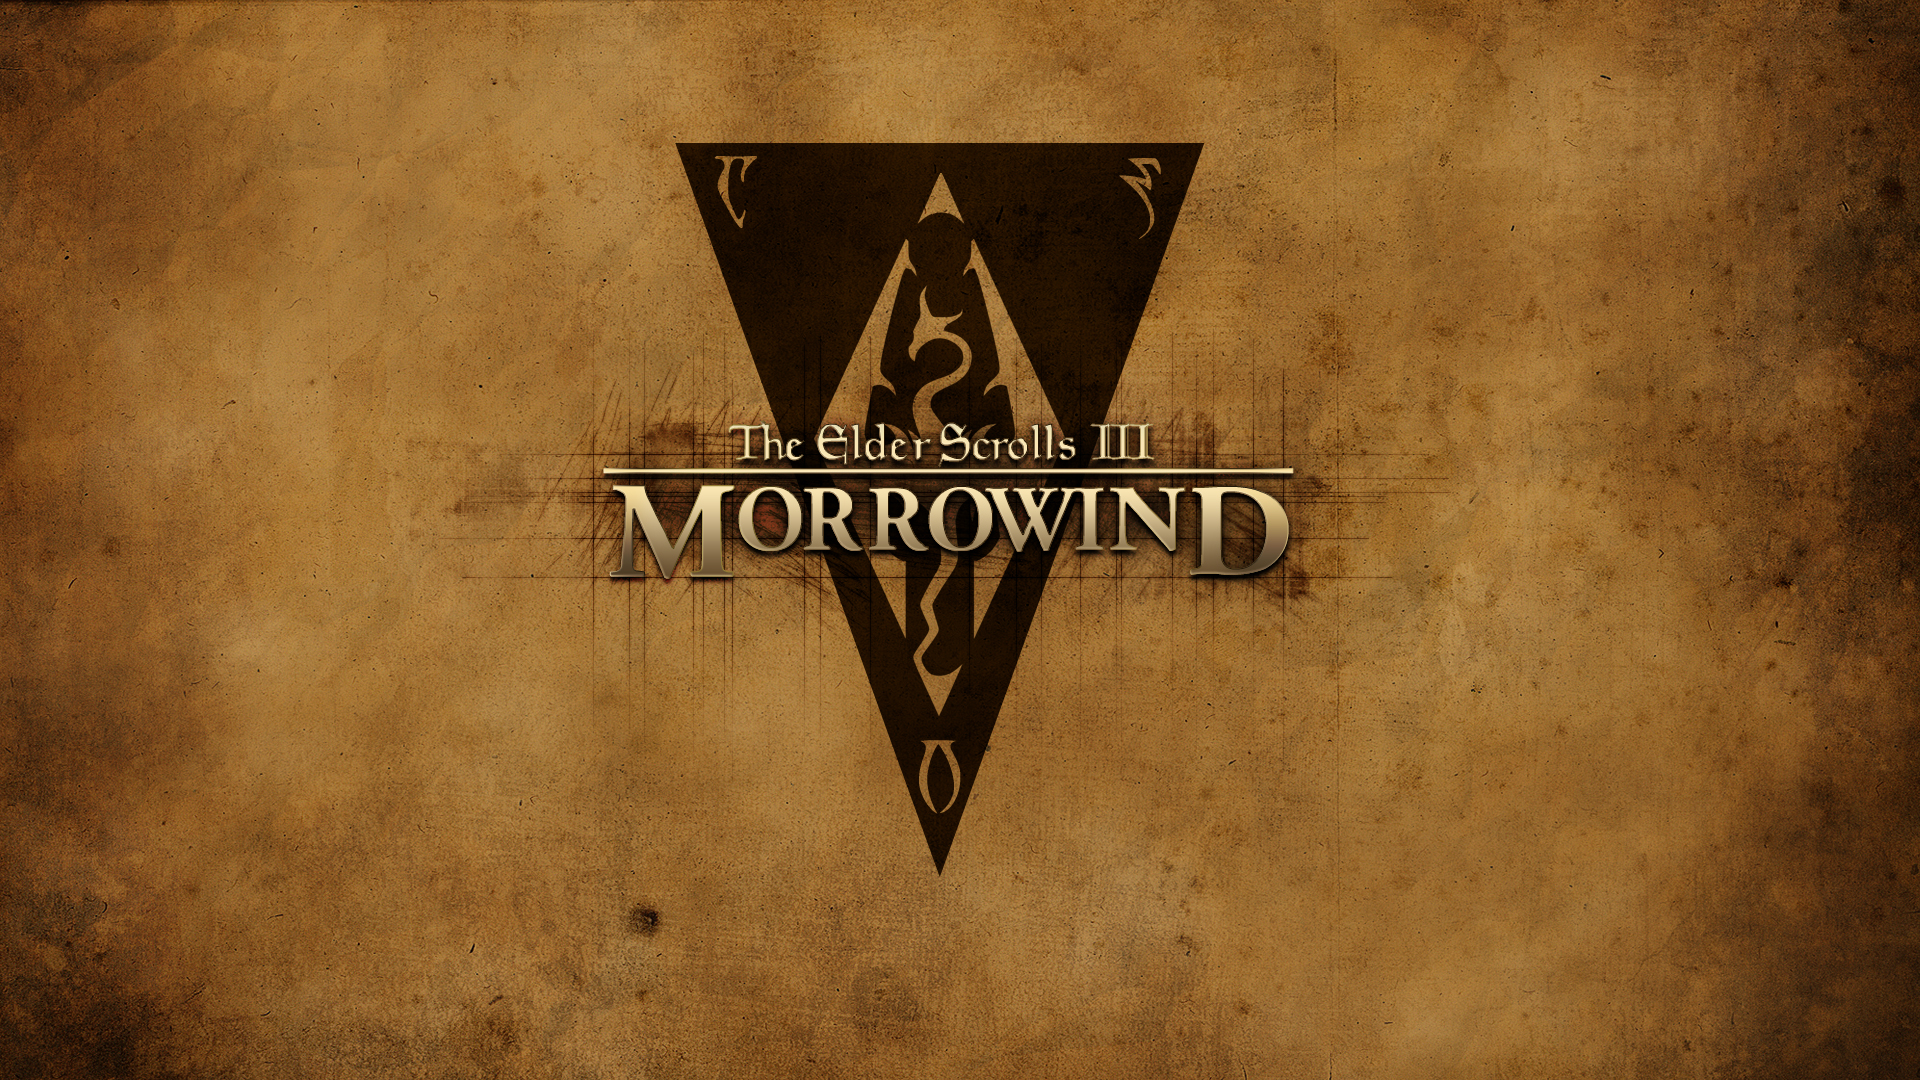 The Elder Scrolls Iii Morrowind Re Pcgamesarchive